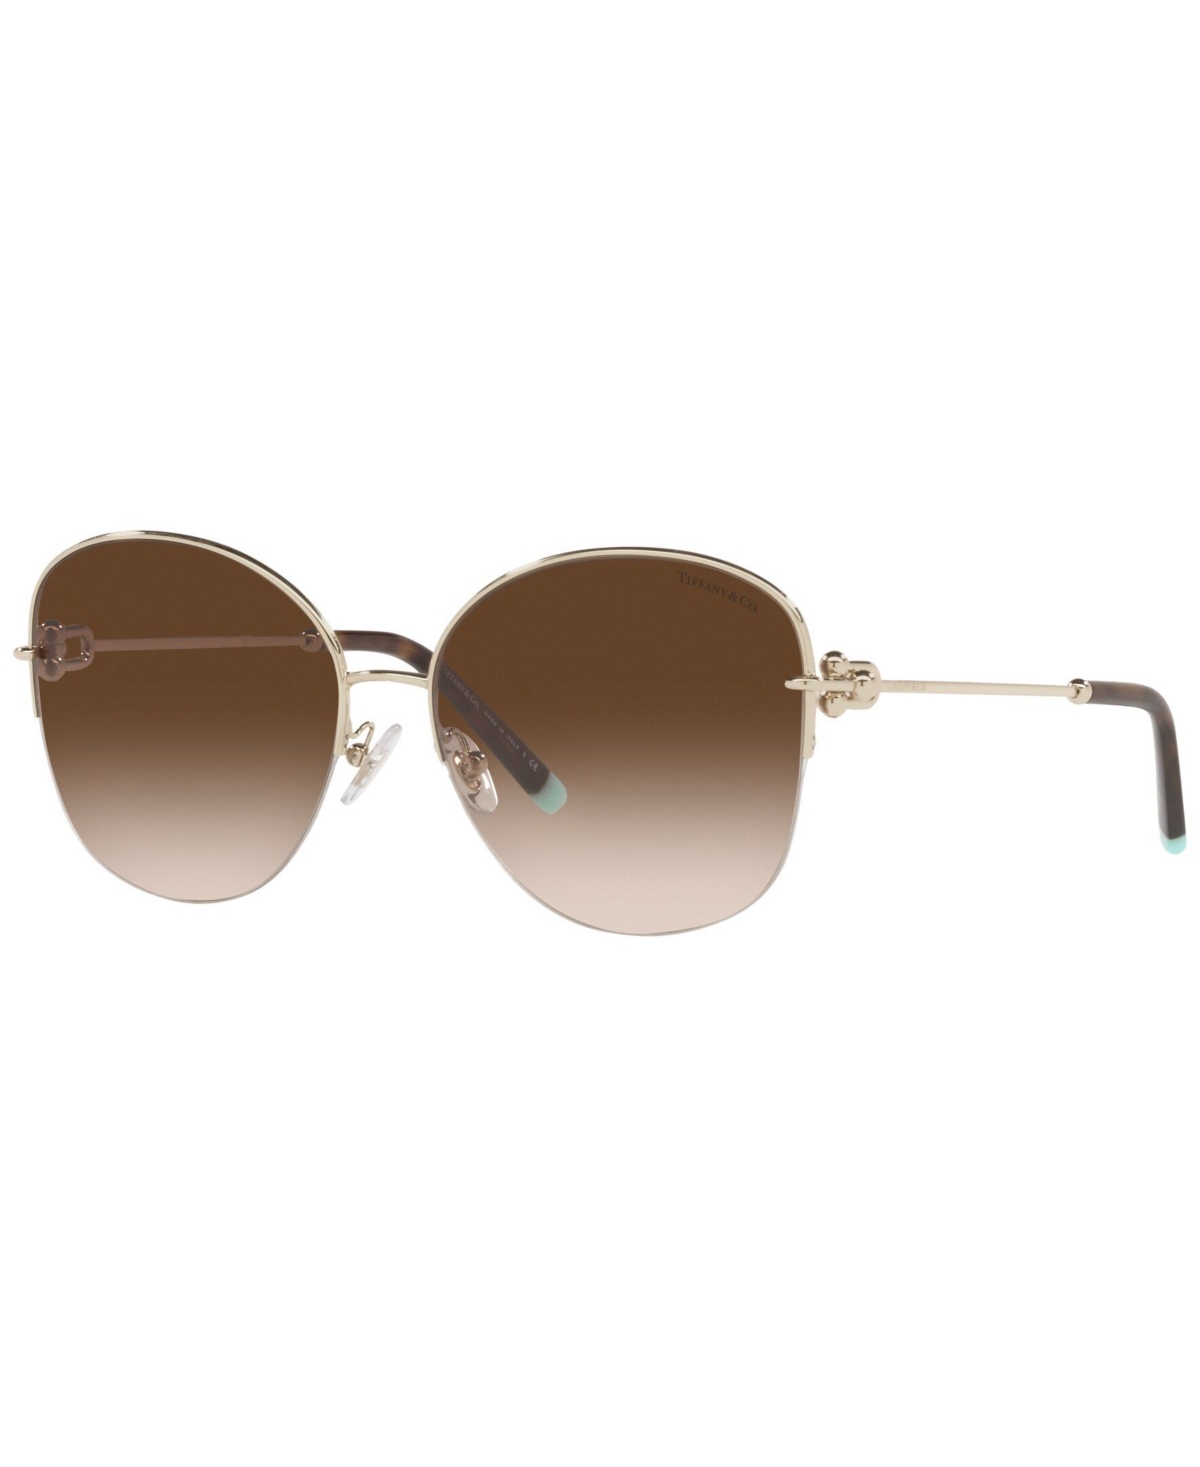 Tiffany & Co Women's Sunglasses, Tf3082 58 In Pale Gold-tone